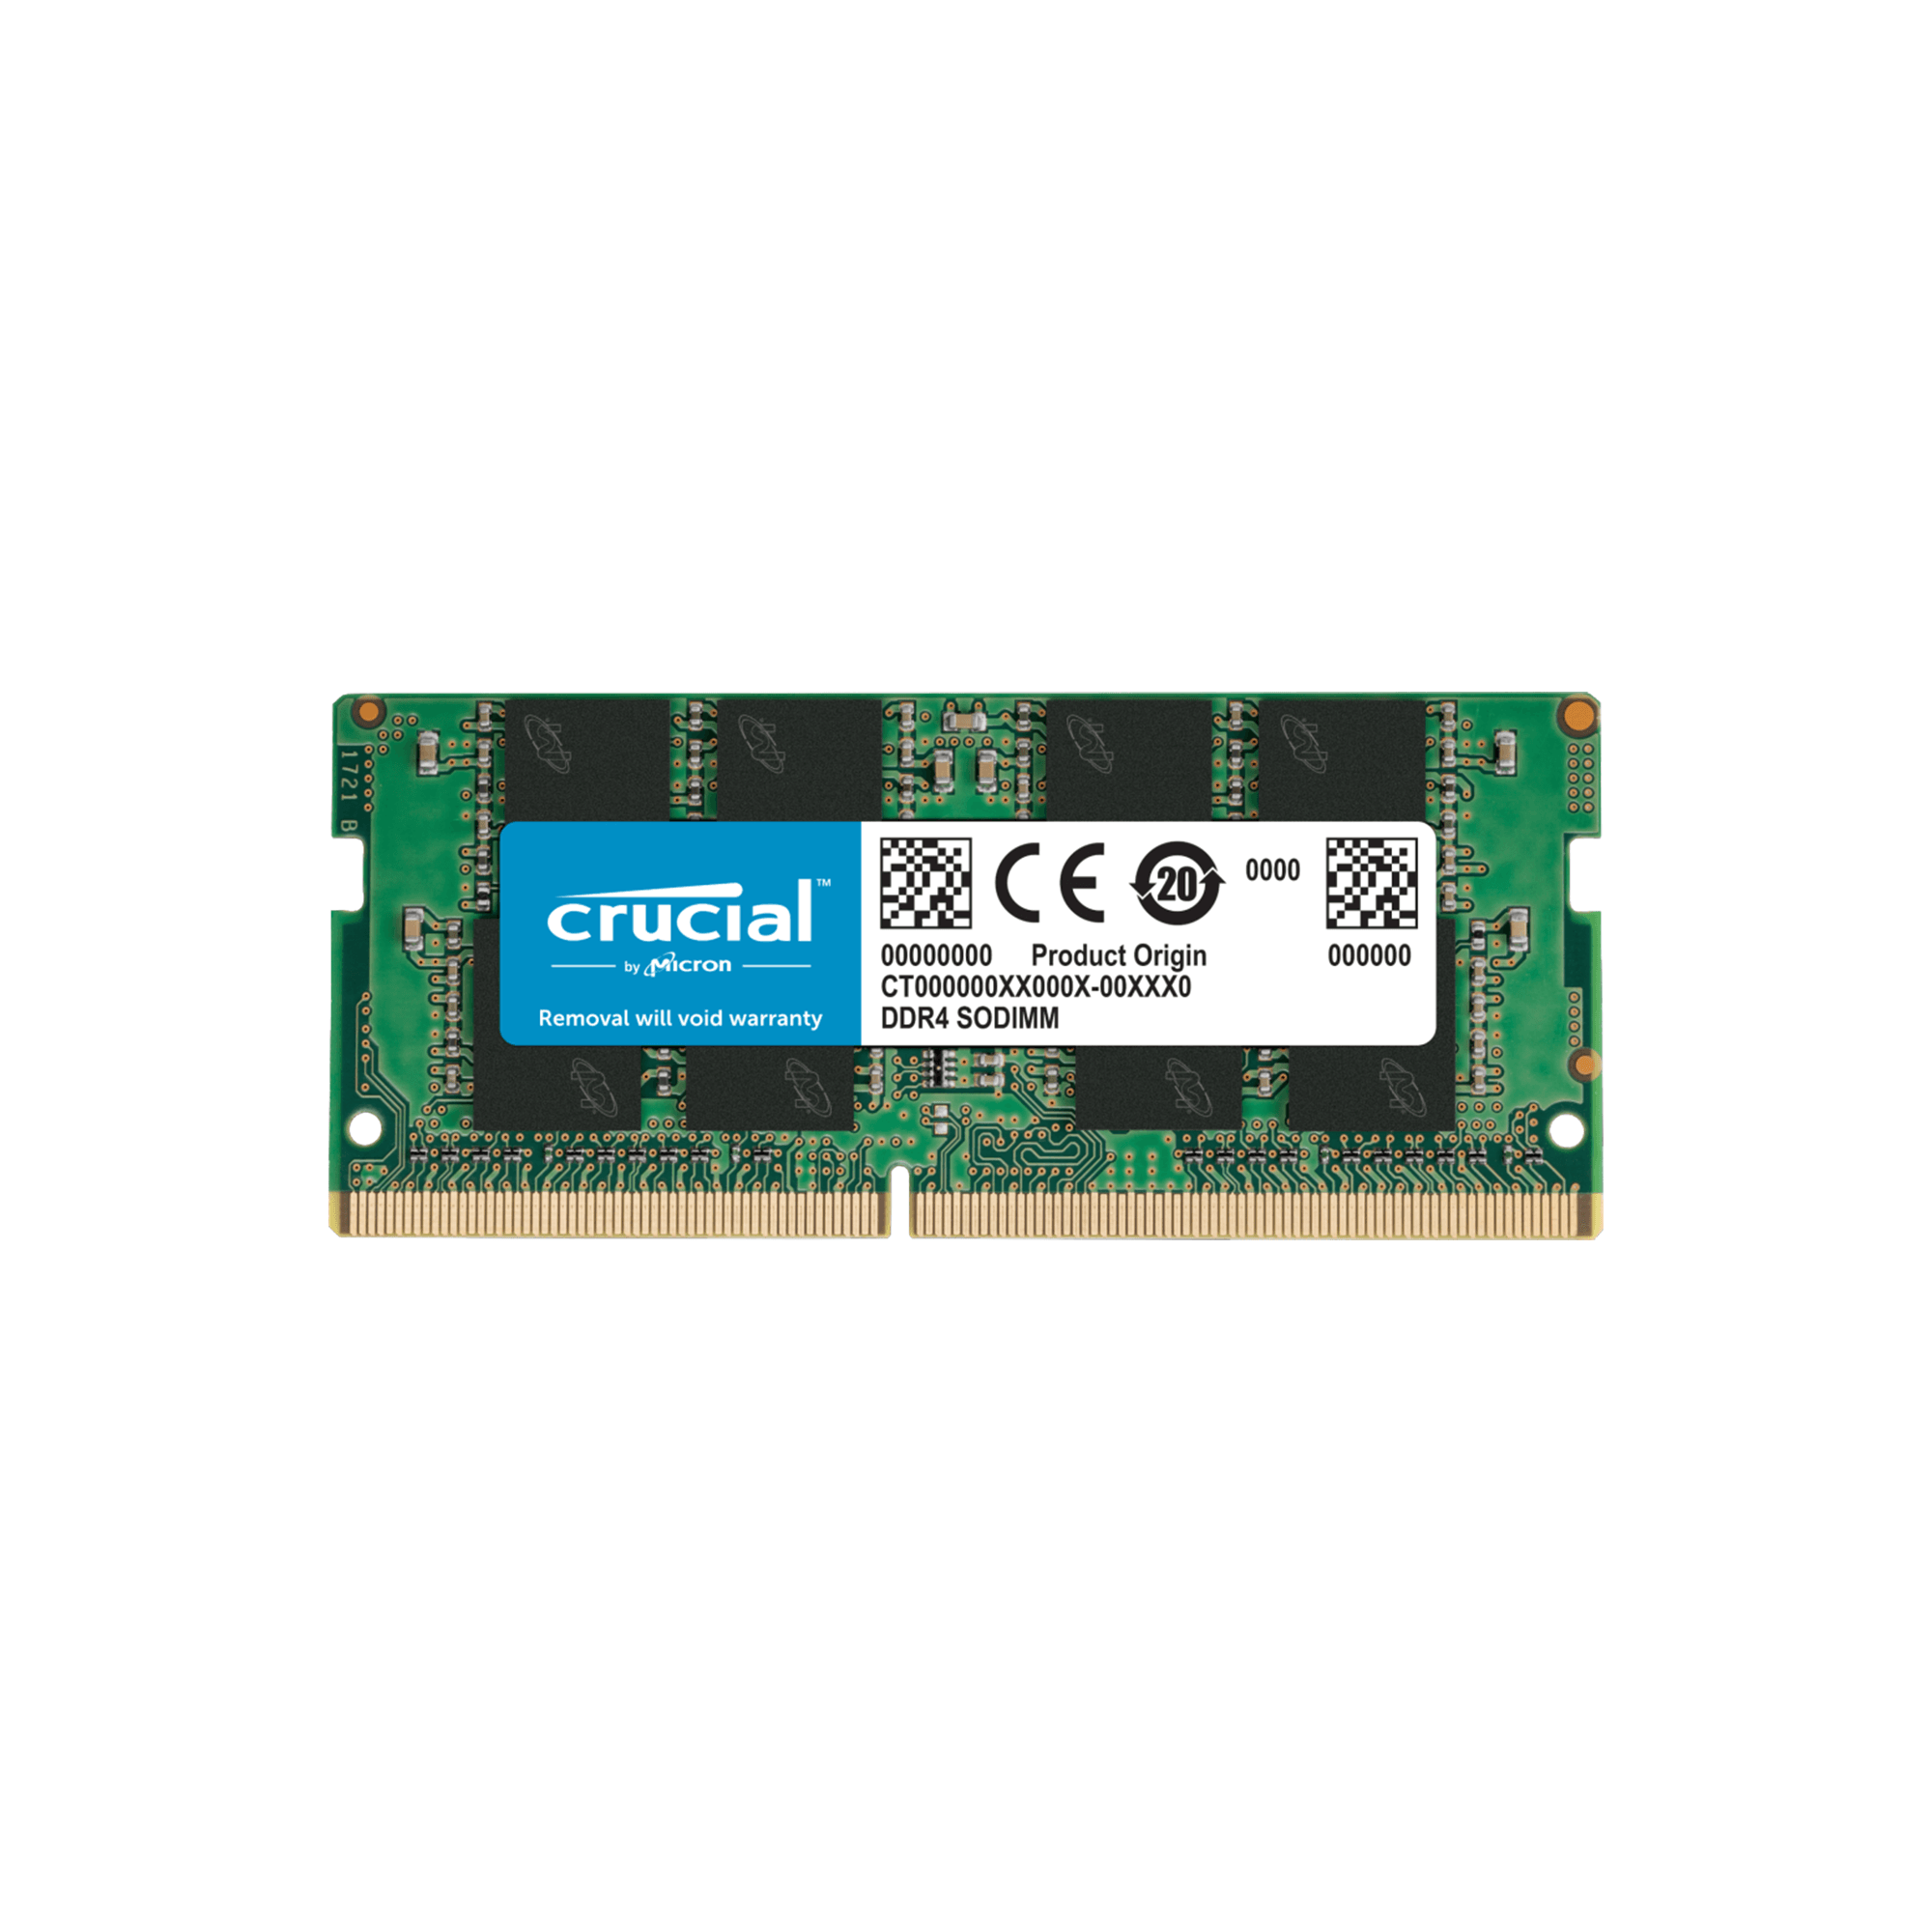 Crucial CT16G4SFRA32A 16GB DDR4-3200 SODIMM RAM